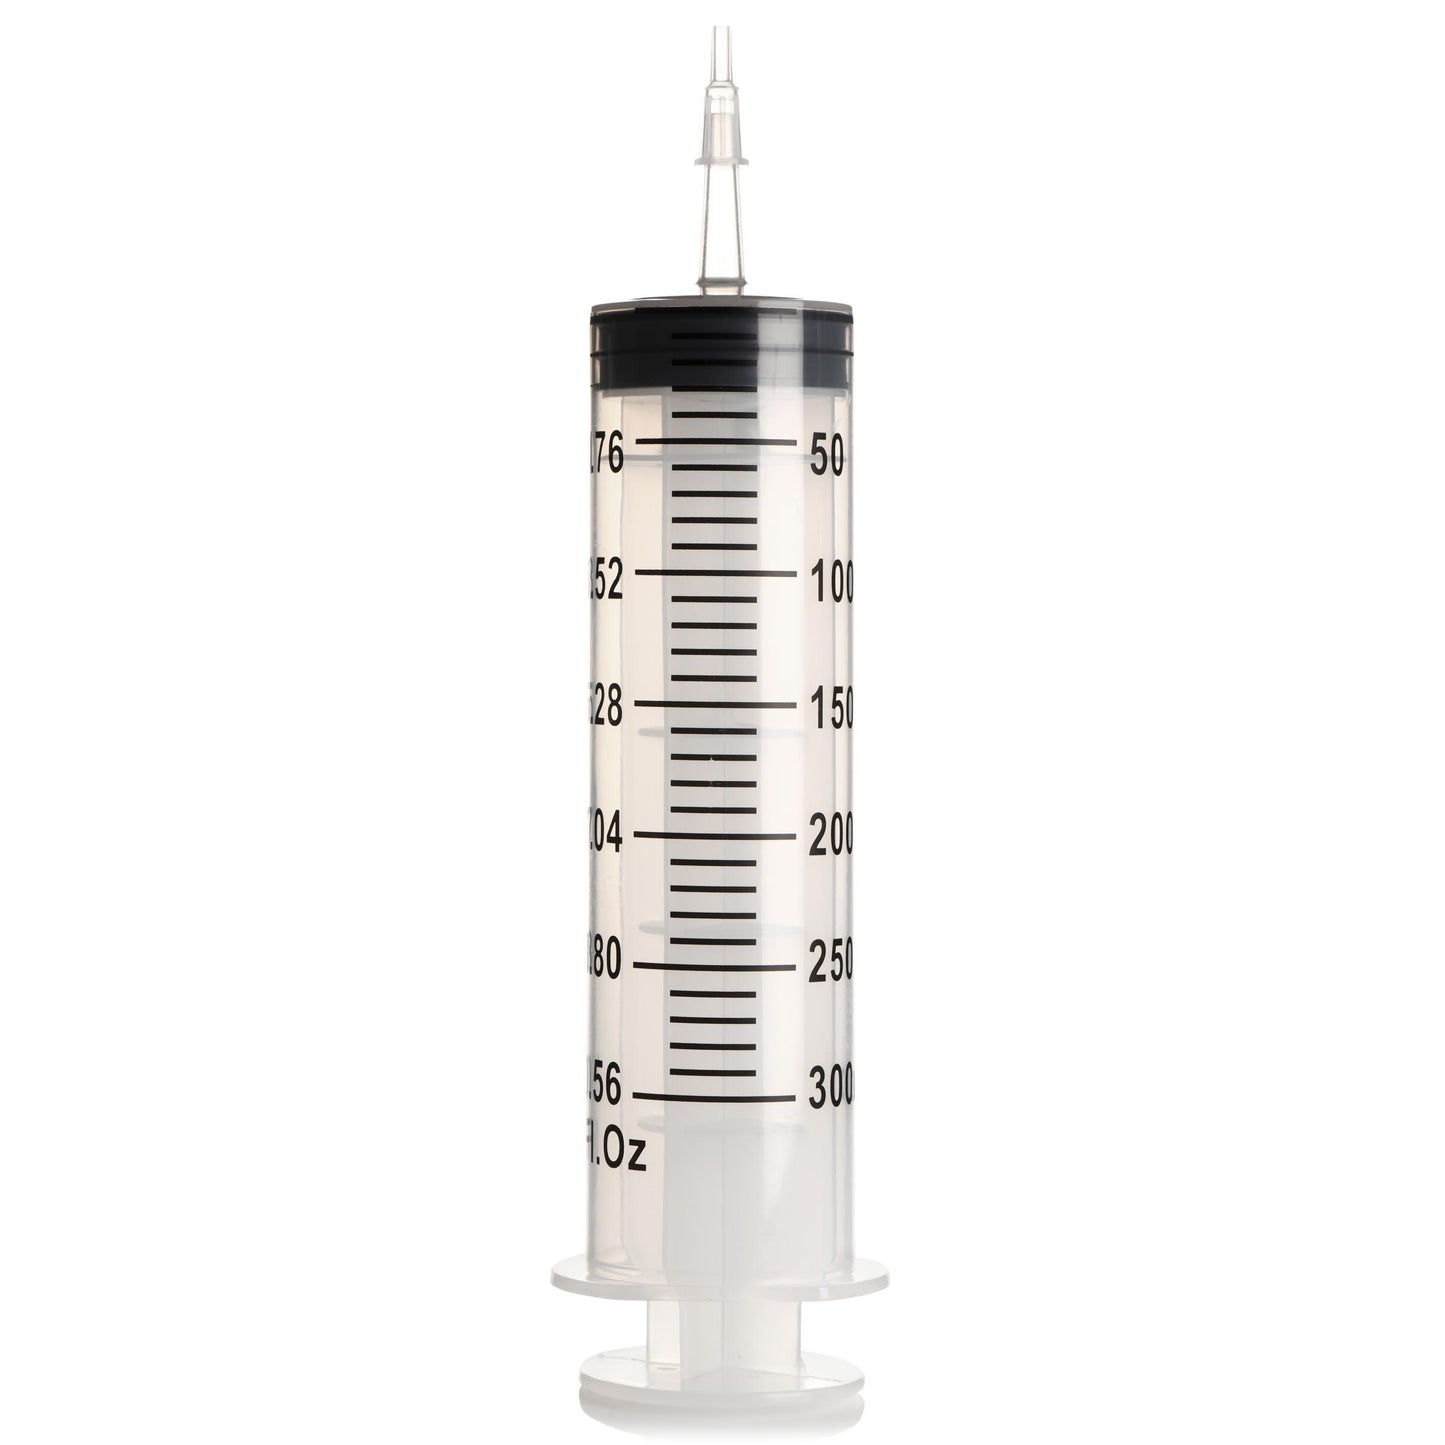 Enema Syringe With Tube - 300ml